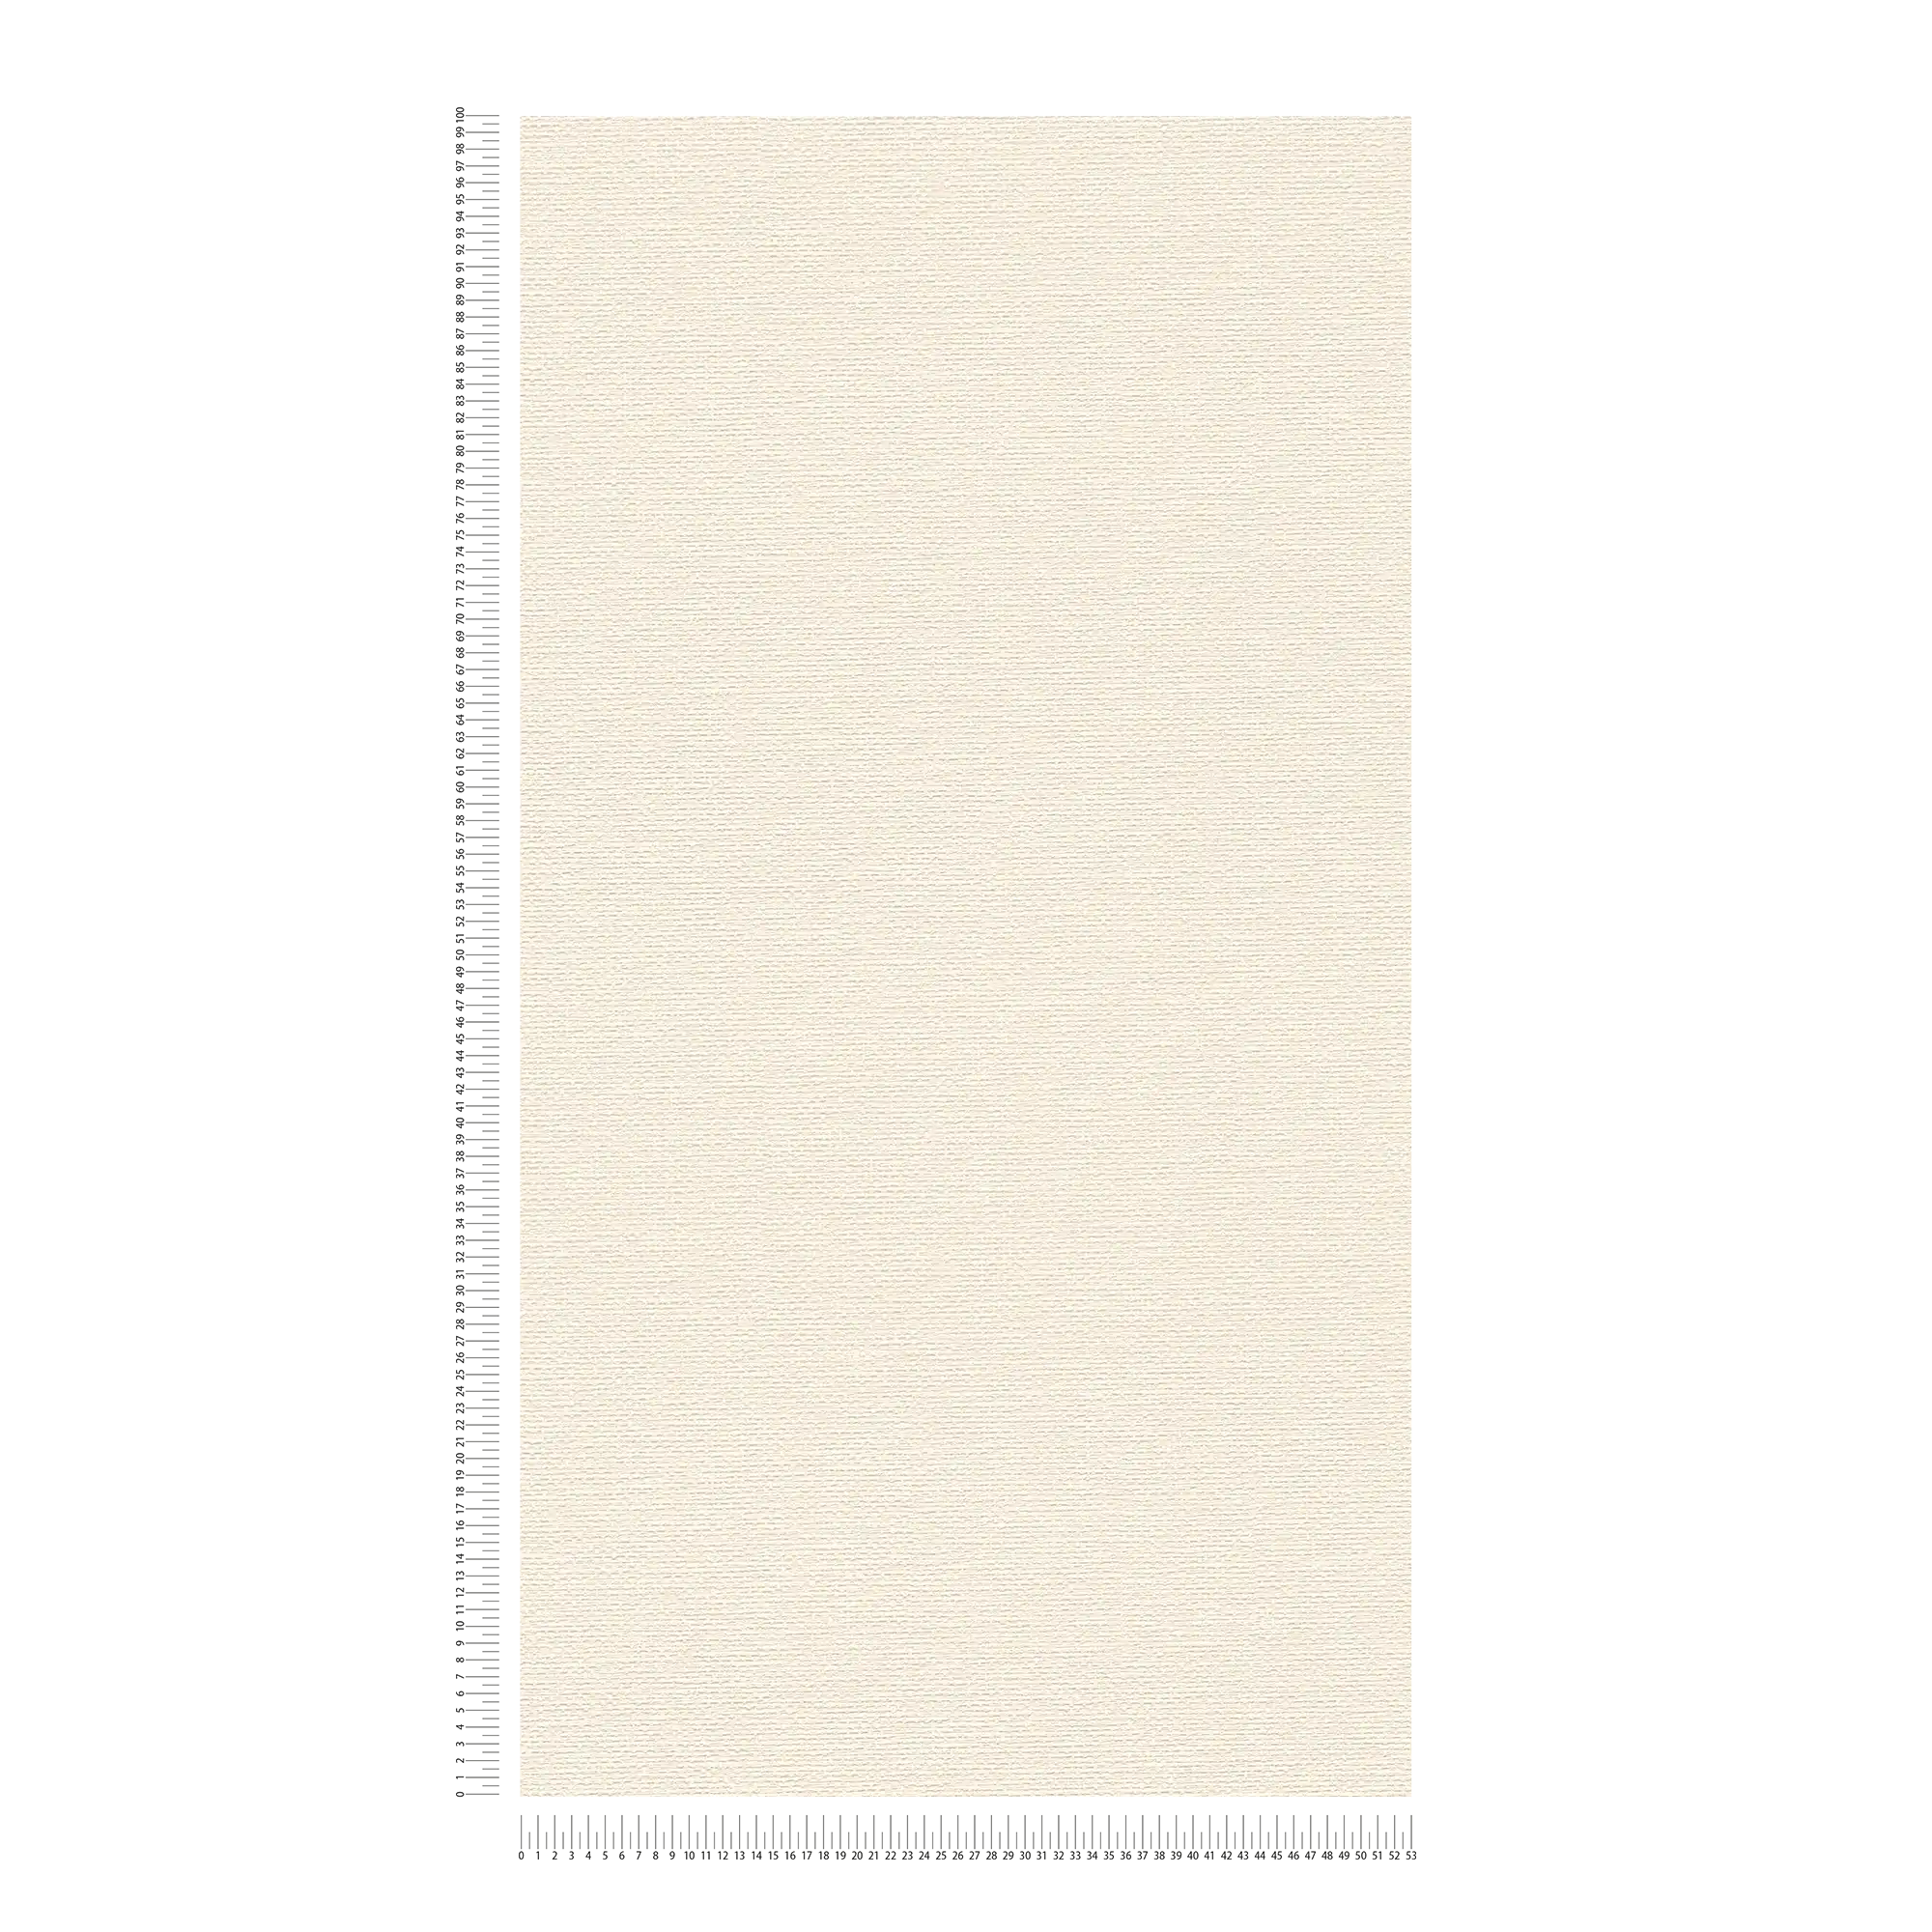             Carta da parati in tessuto in stile scandi - crema, bianco
        